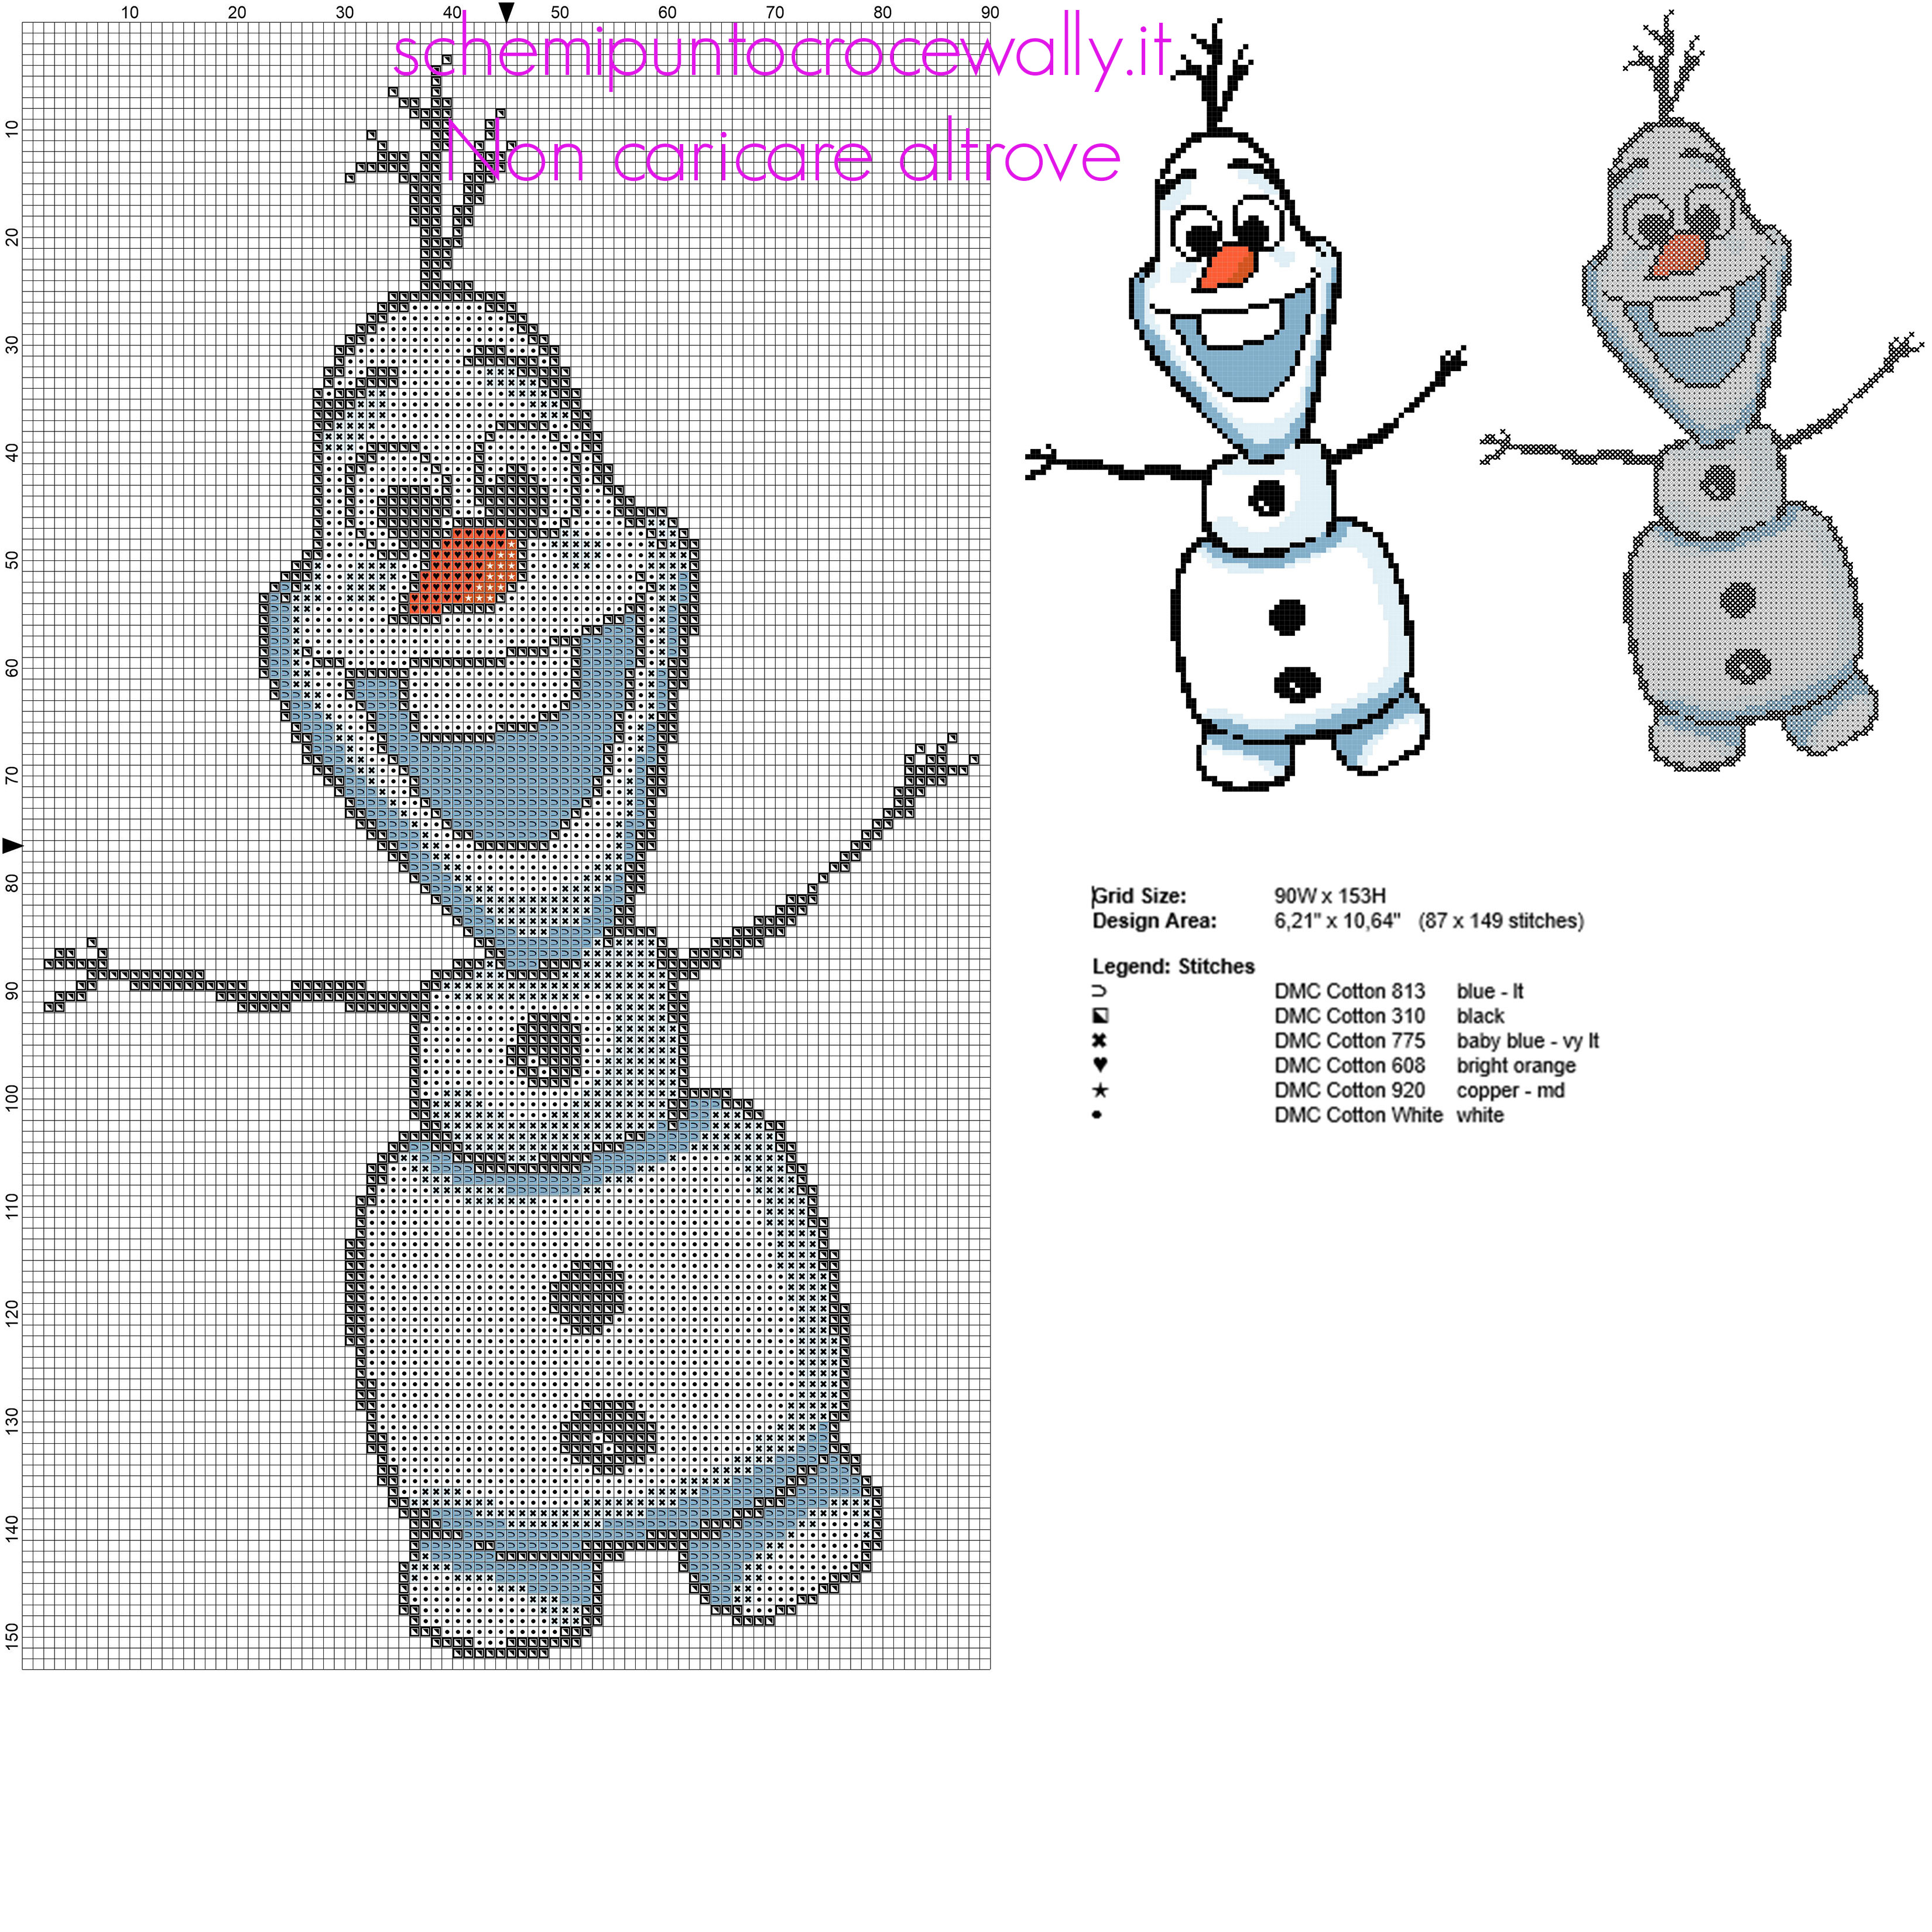 Olaf il pupazzo di neve del cartone animato film Disney Frozen schema punto croce gratuito